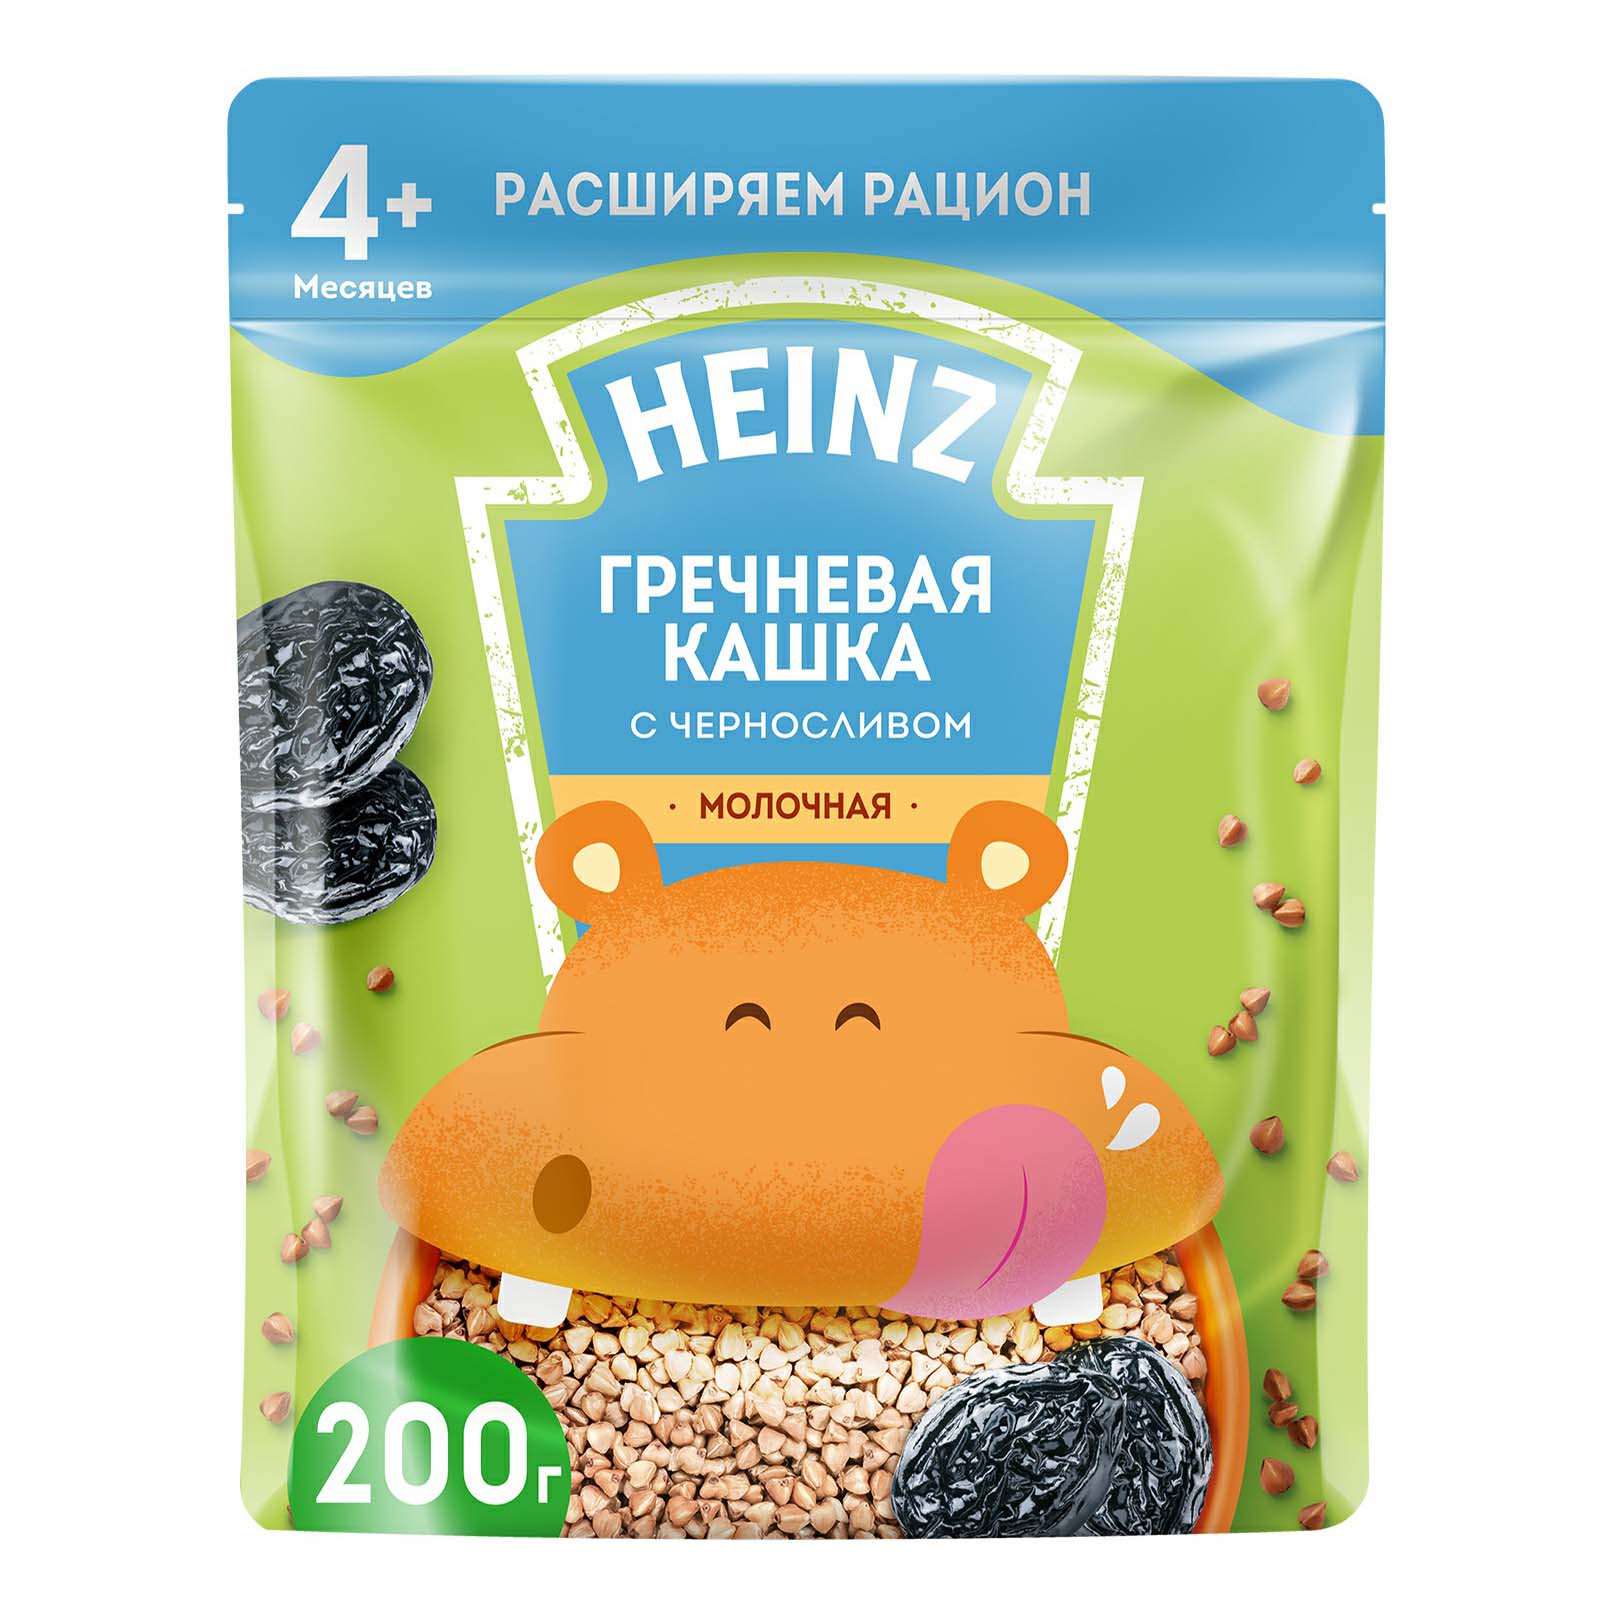 

Каша Heinz гречневая молочная с черносливом и Омега-3 с 4 месяцев 200 г